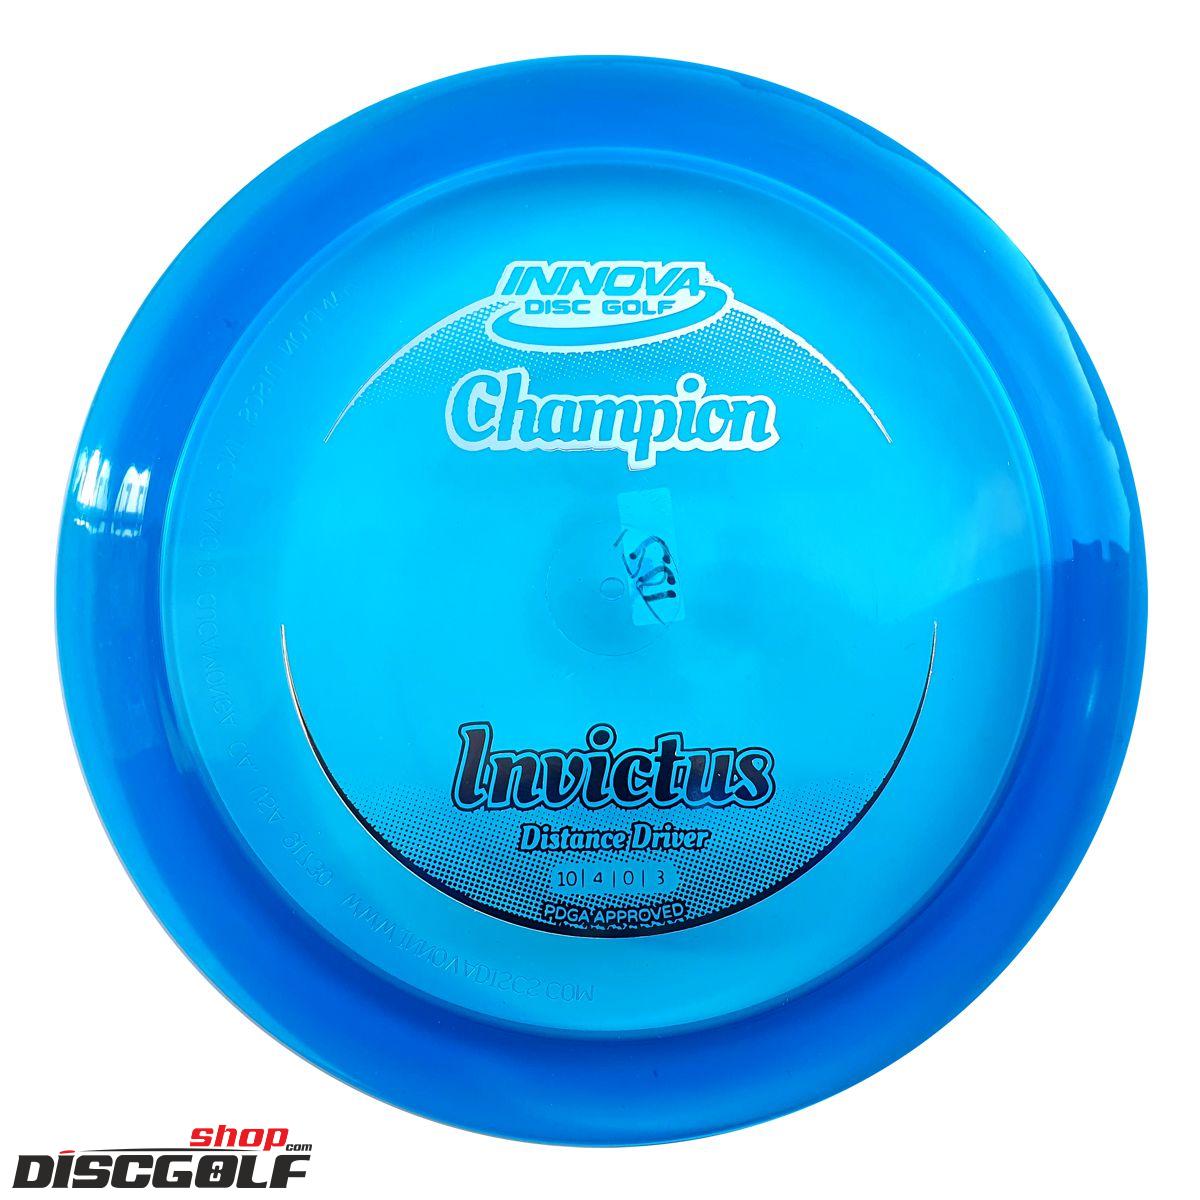 Innova Invictus Champion (discgolf)